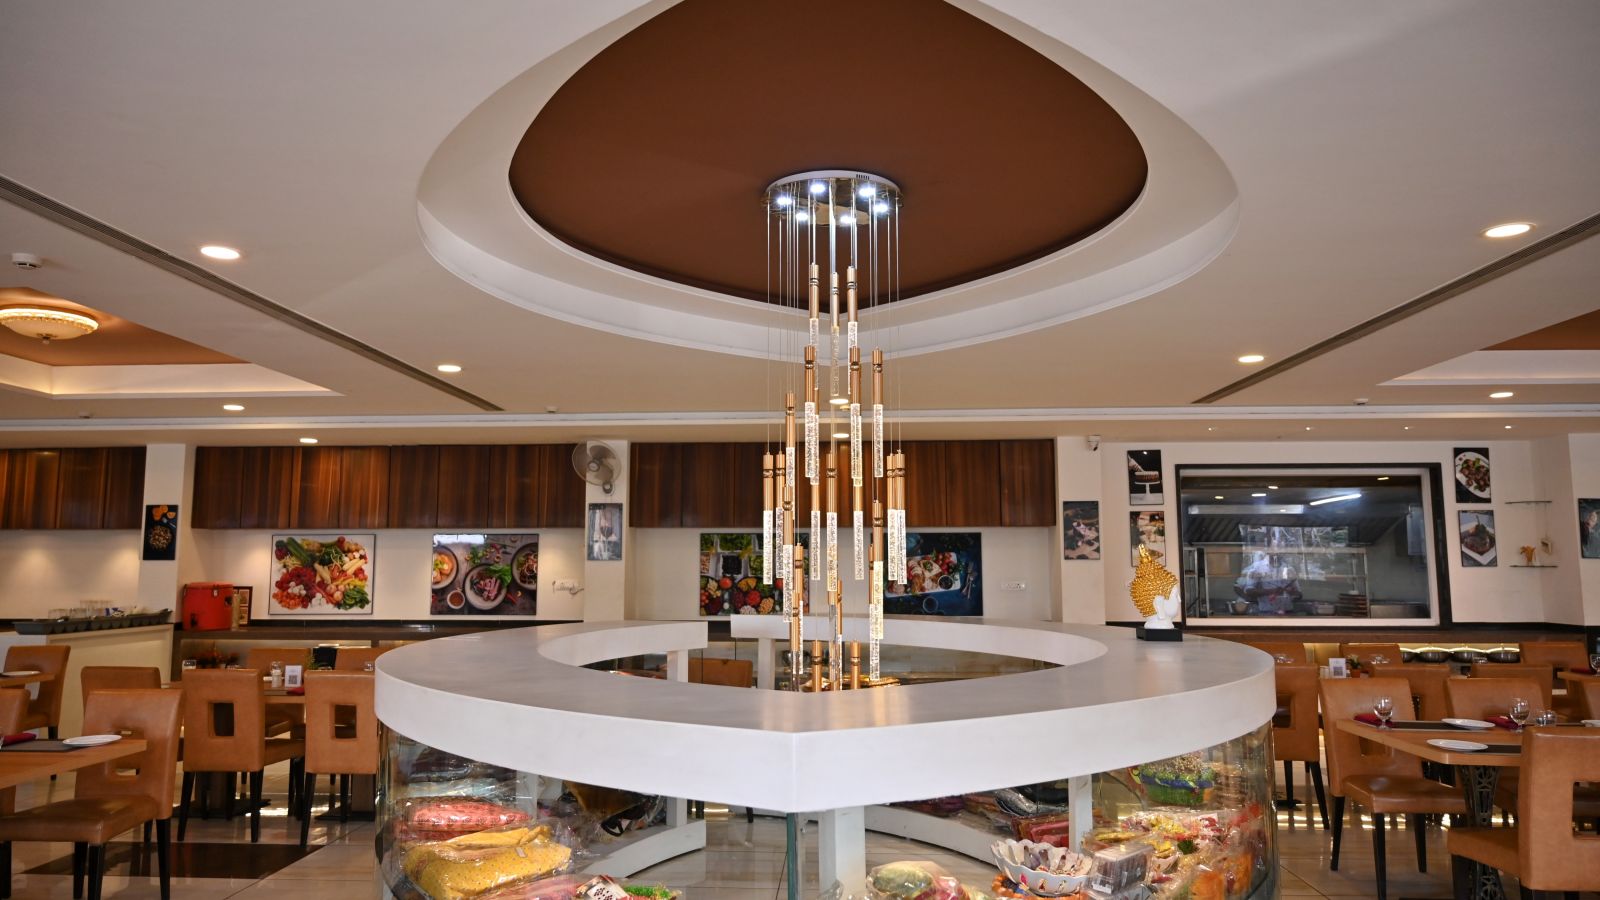 Hotel restaurant interior with circular centre piece display under a modern chandelier